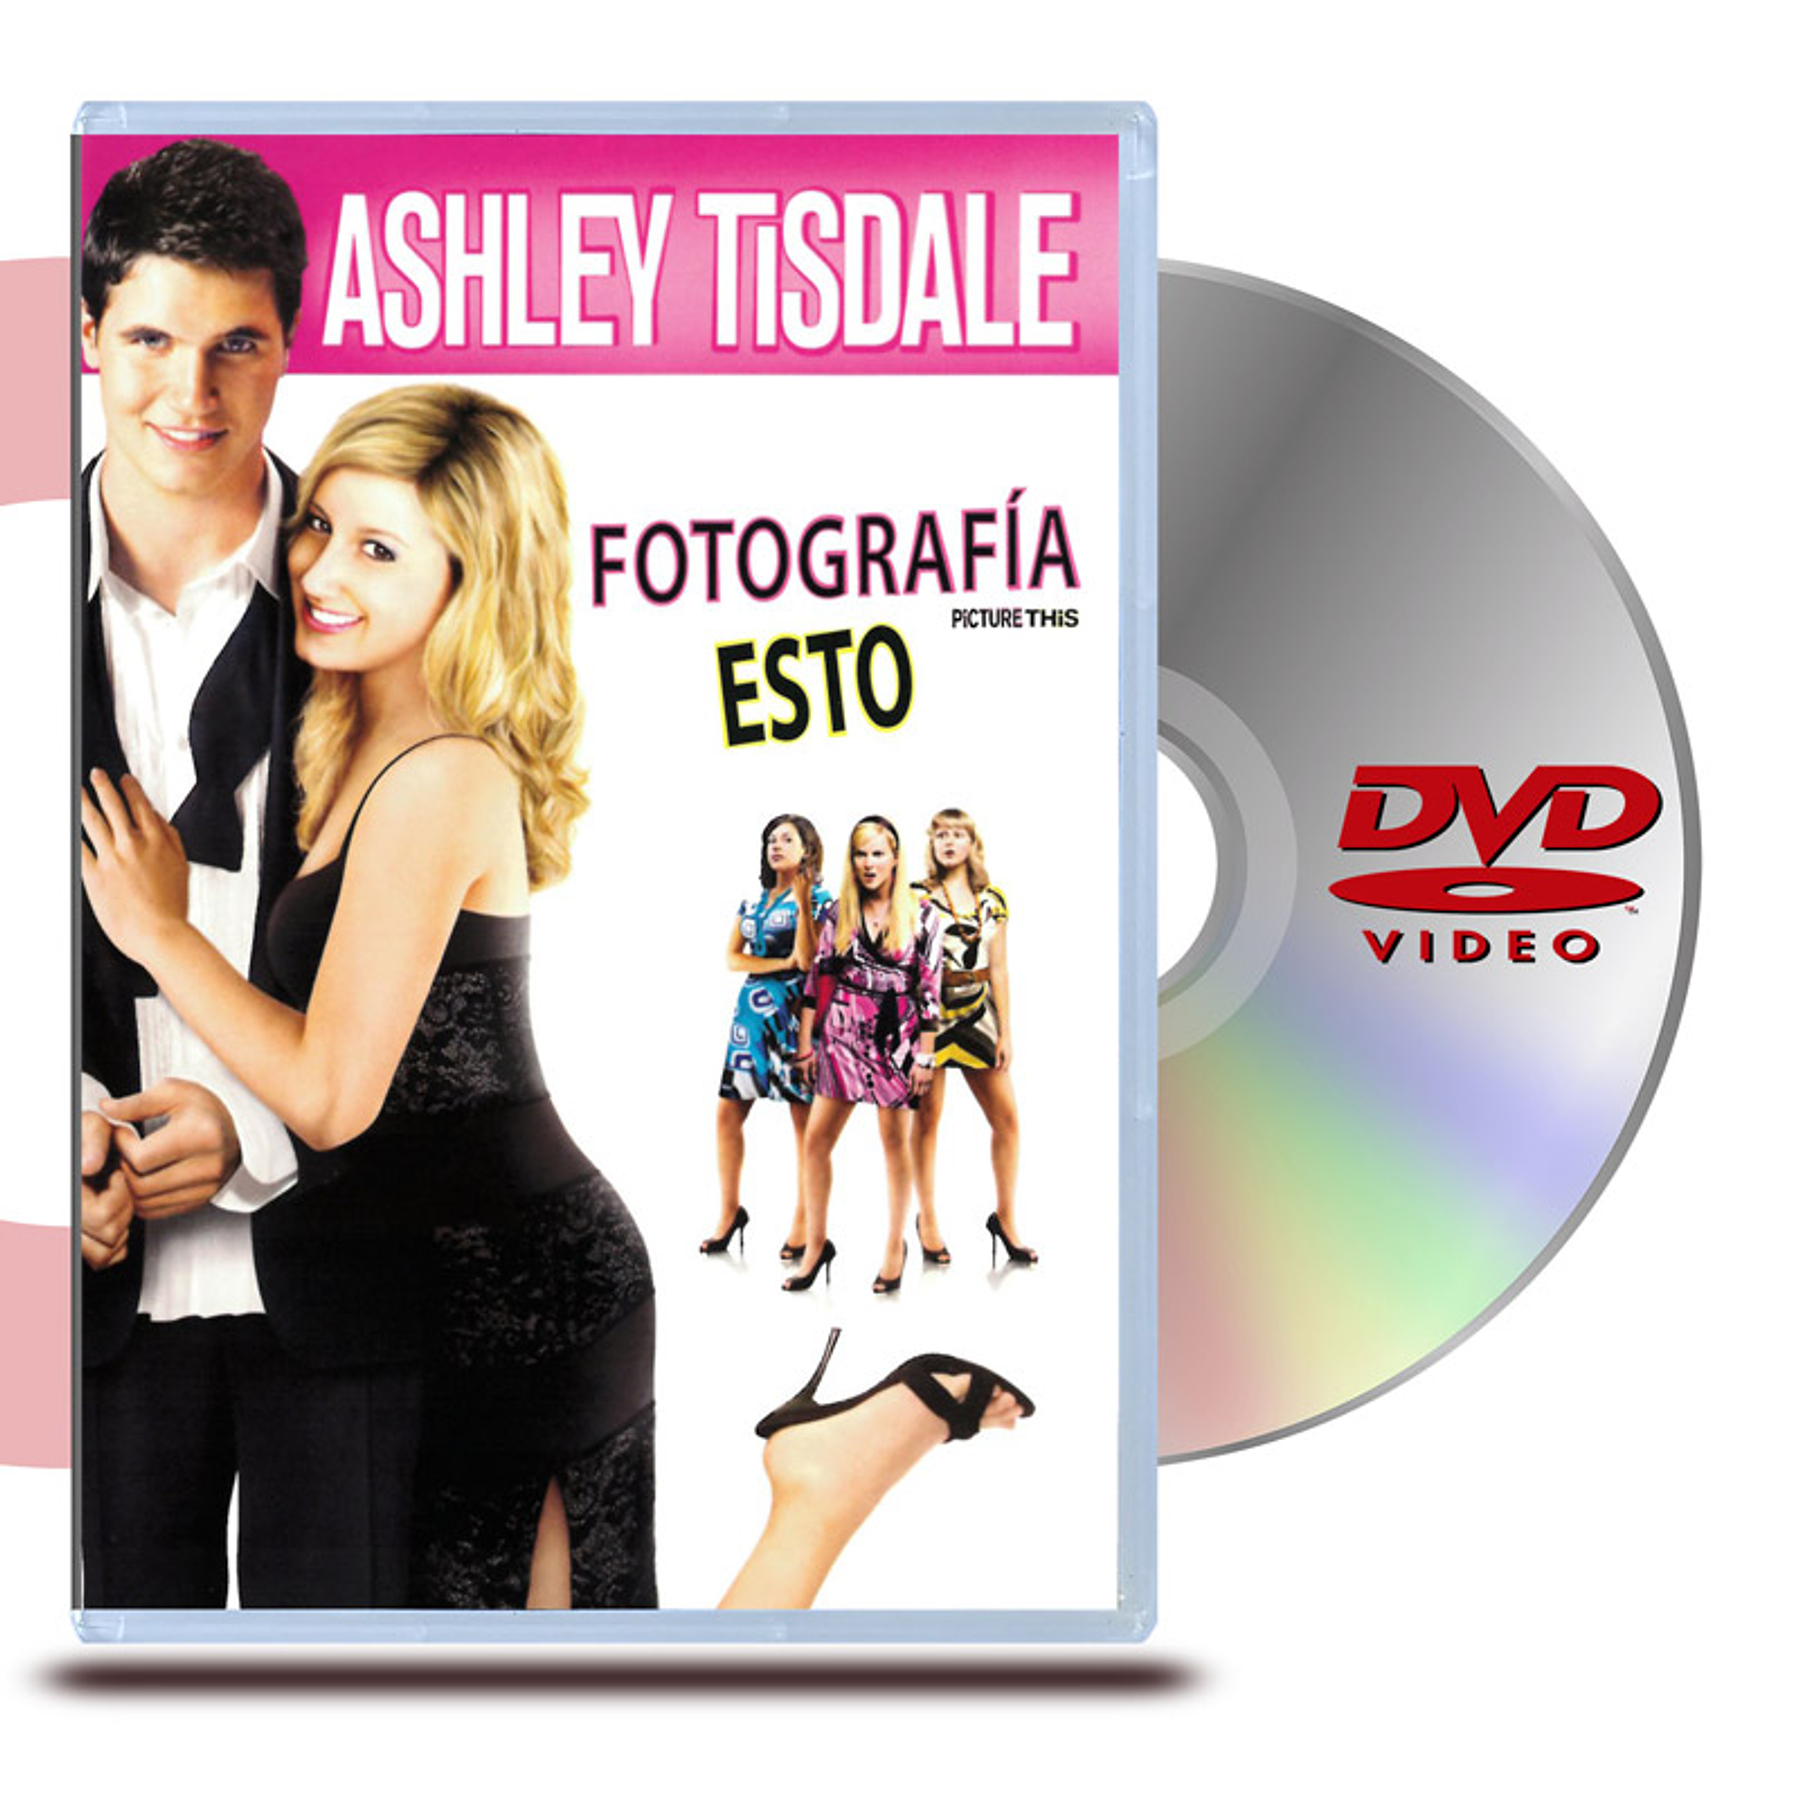 DVD FOTOGRAFIA ESTO (PICTURE THIS)